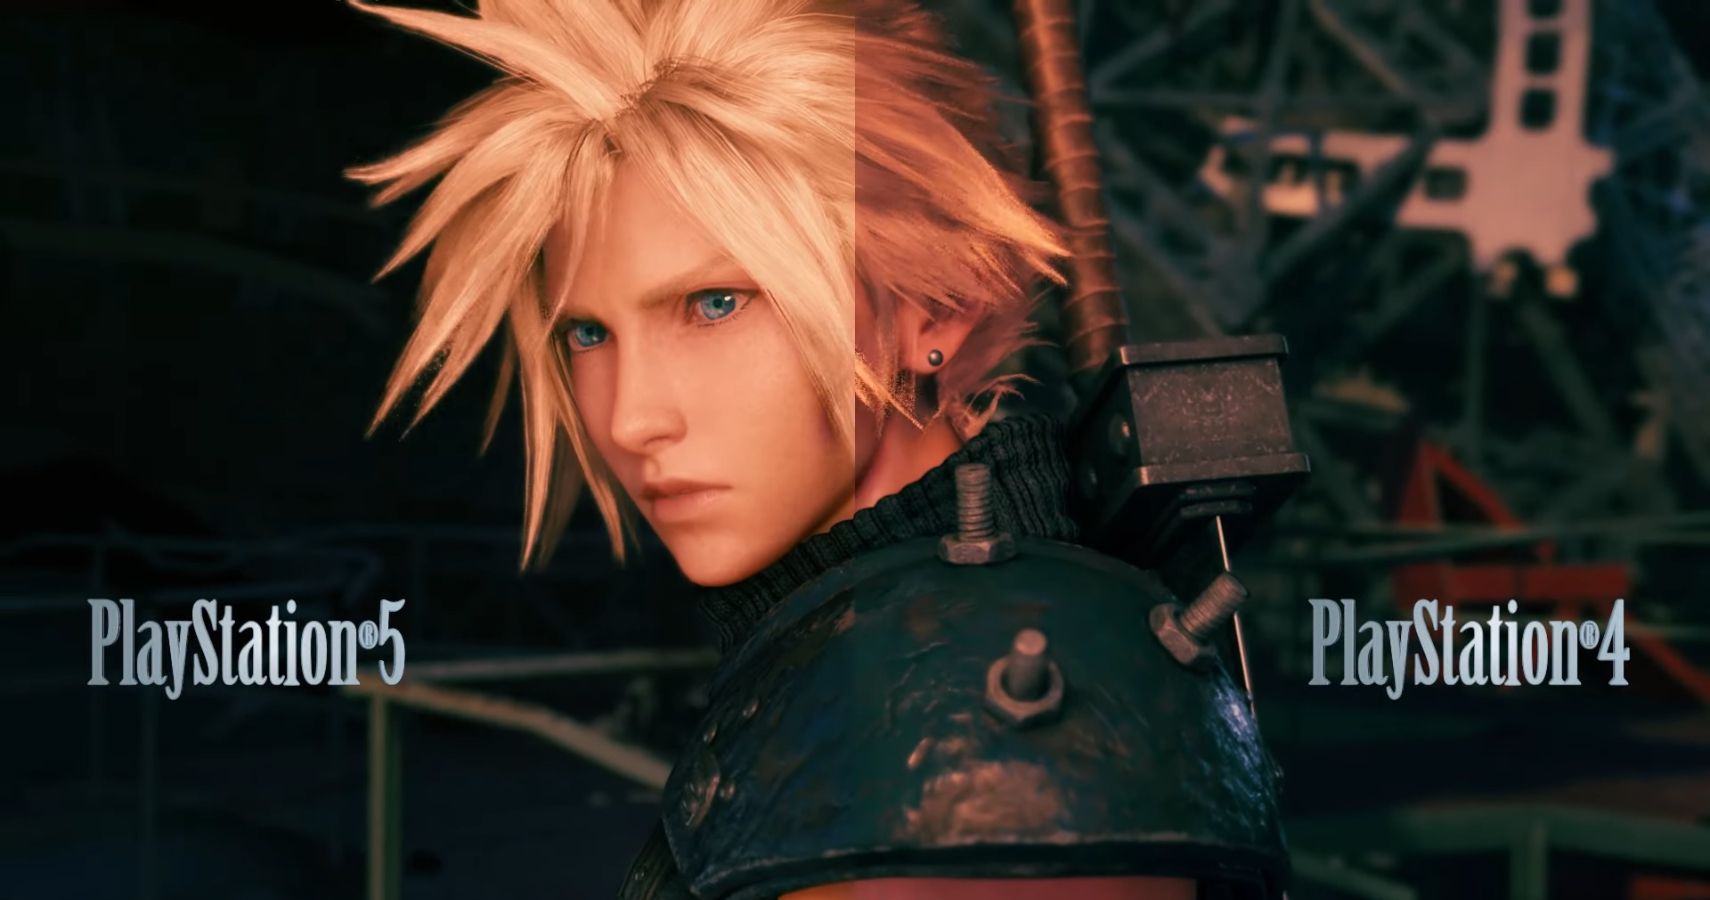 Final Fantasy VII Remake: confira as notas da versão de PS5